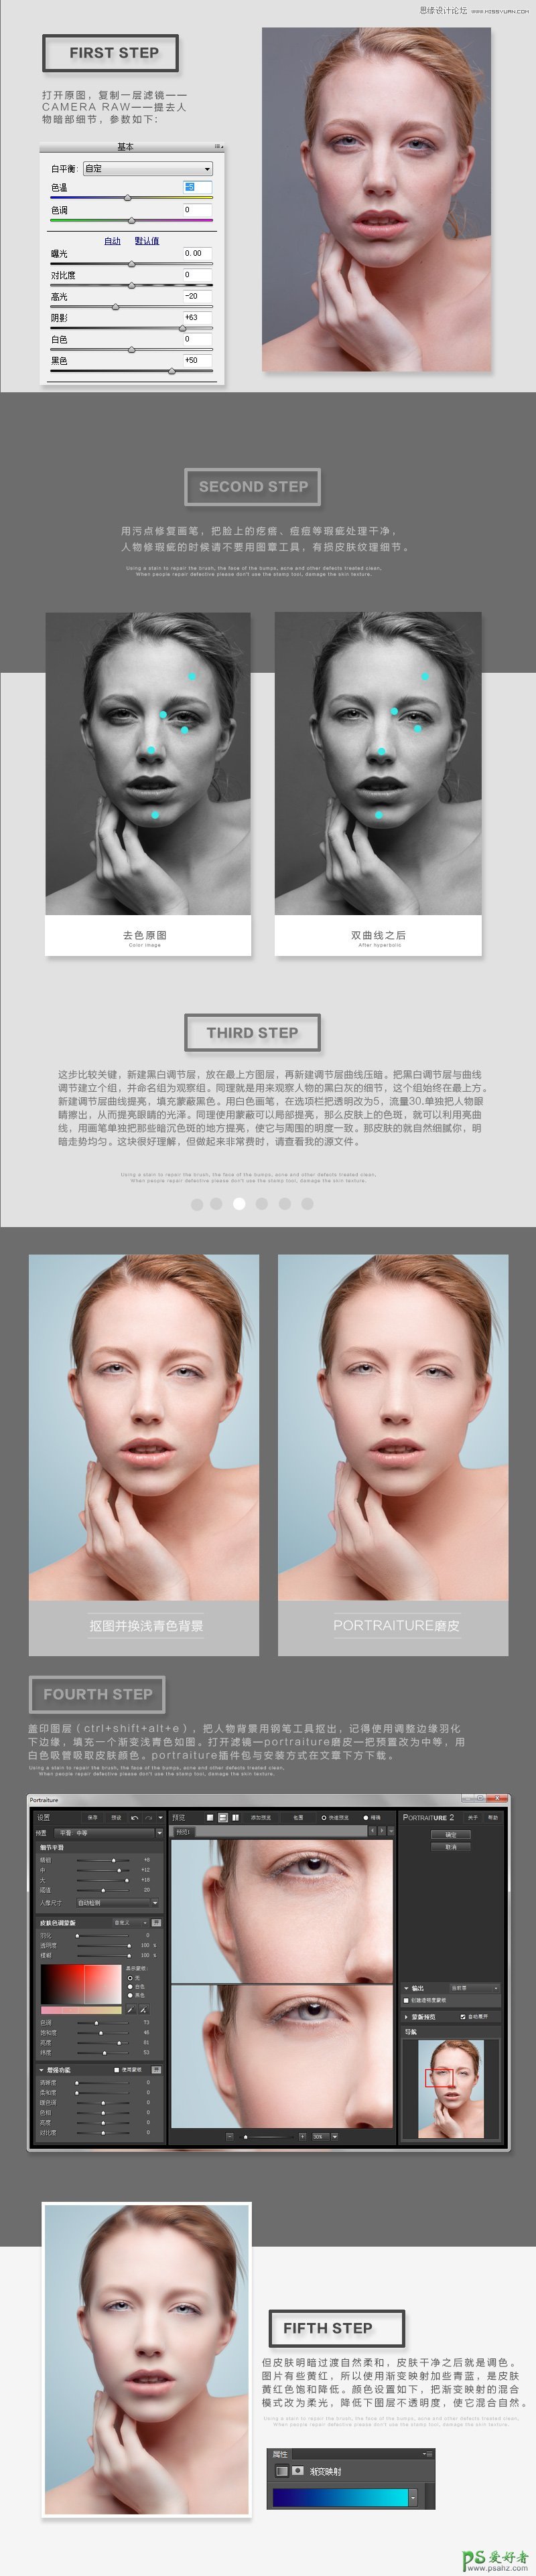 Photoshop磨皮美容教程：学习美女模特肖像后期磨皮精修的方法技